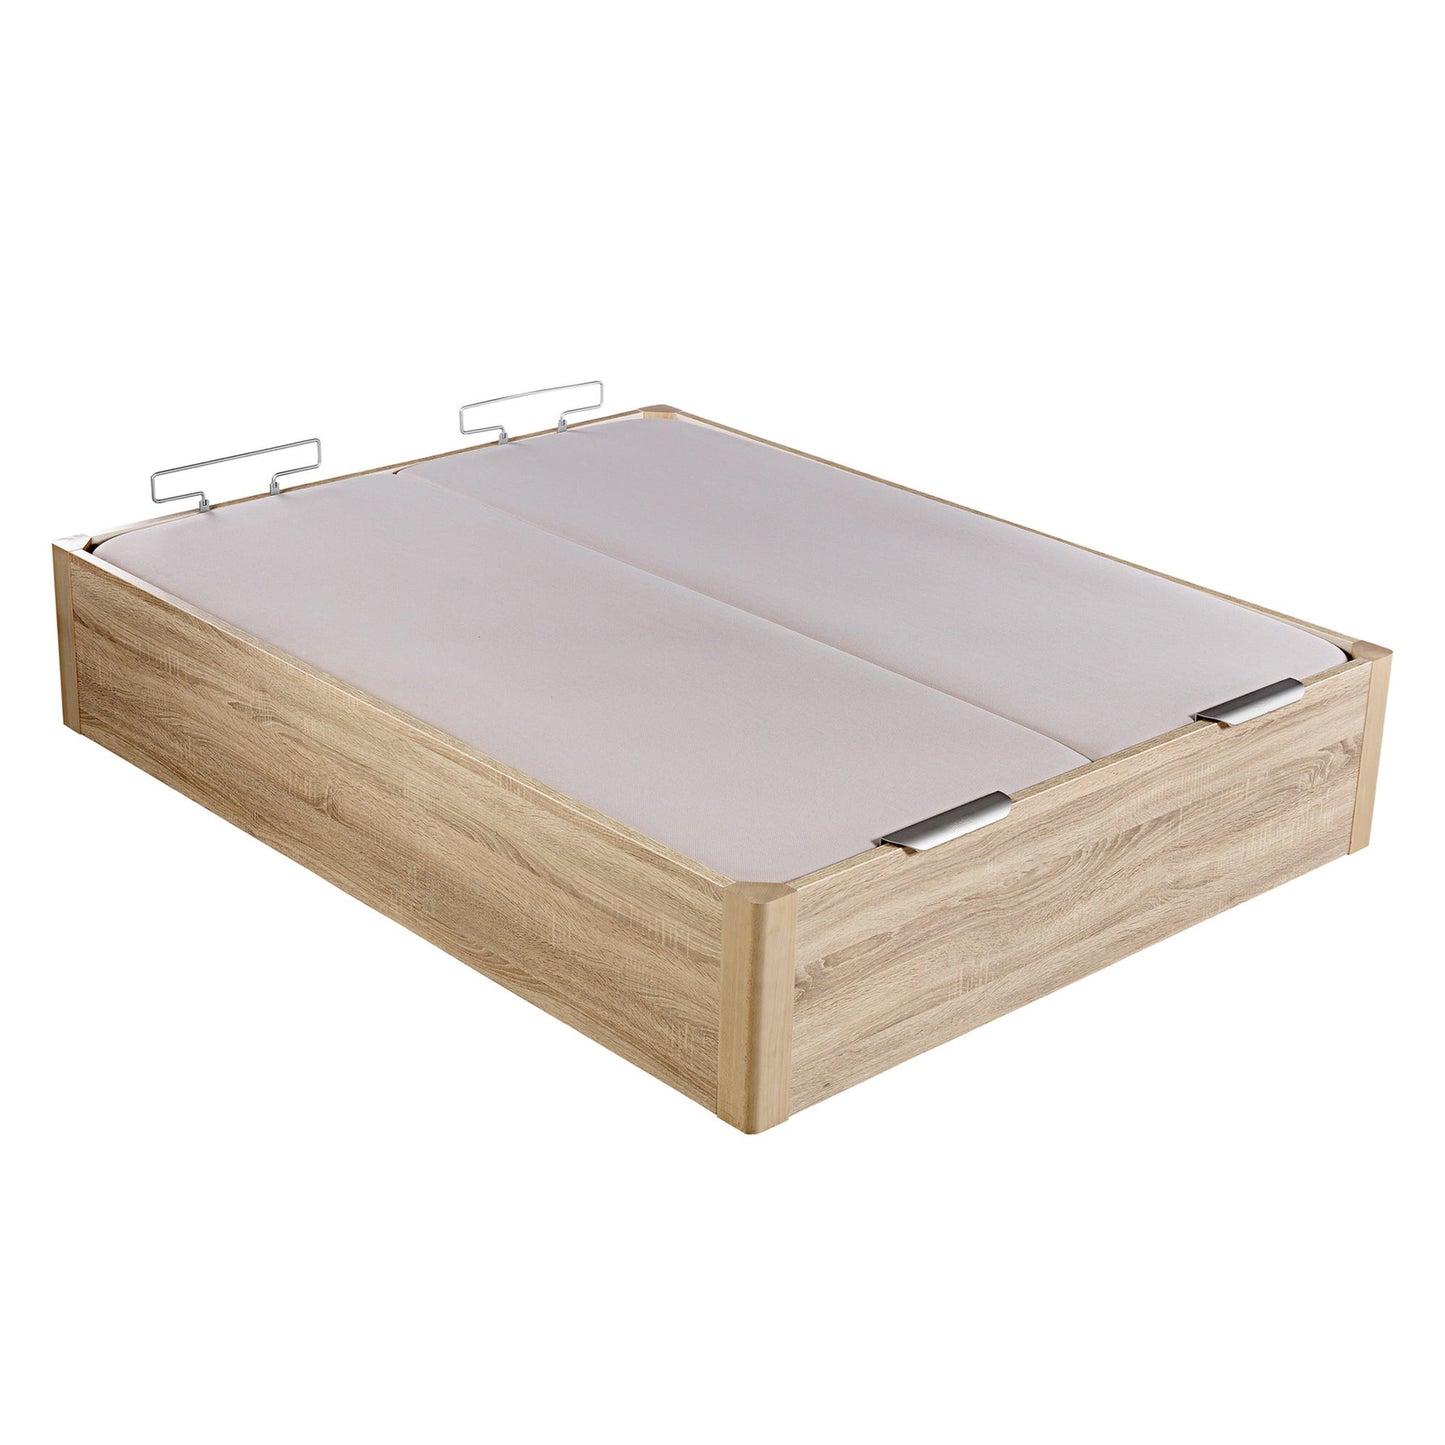 Canapé abatible de madera de alta capacidad tapa doble de color natural - DESIGN - 160x200